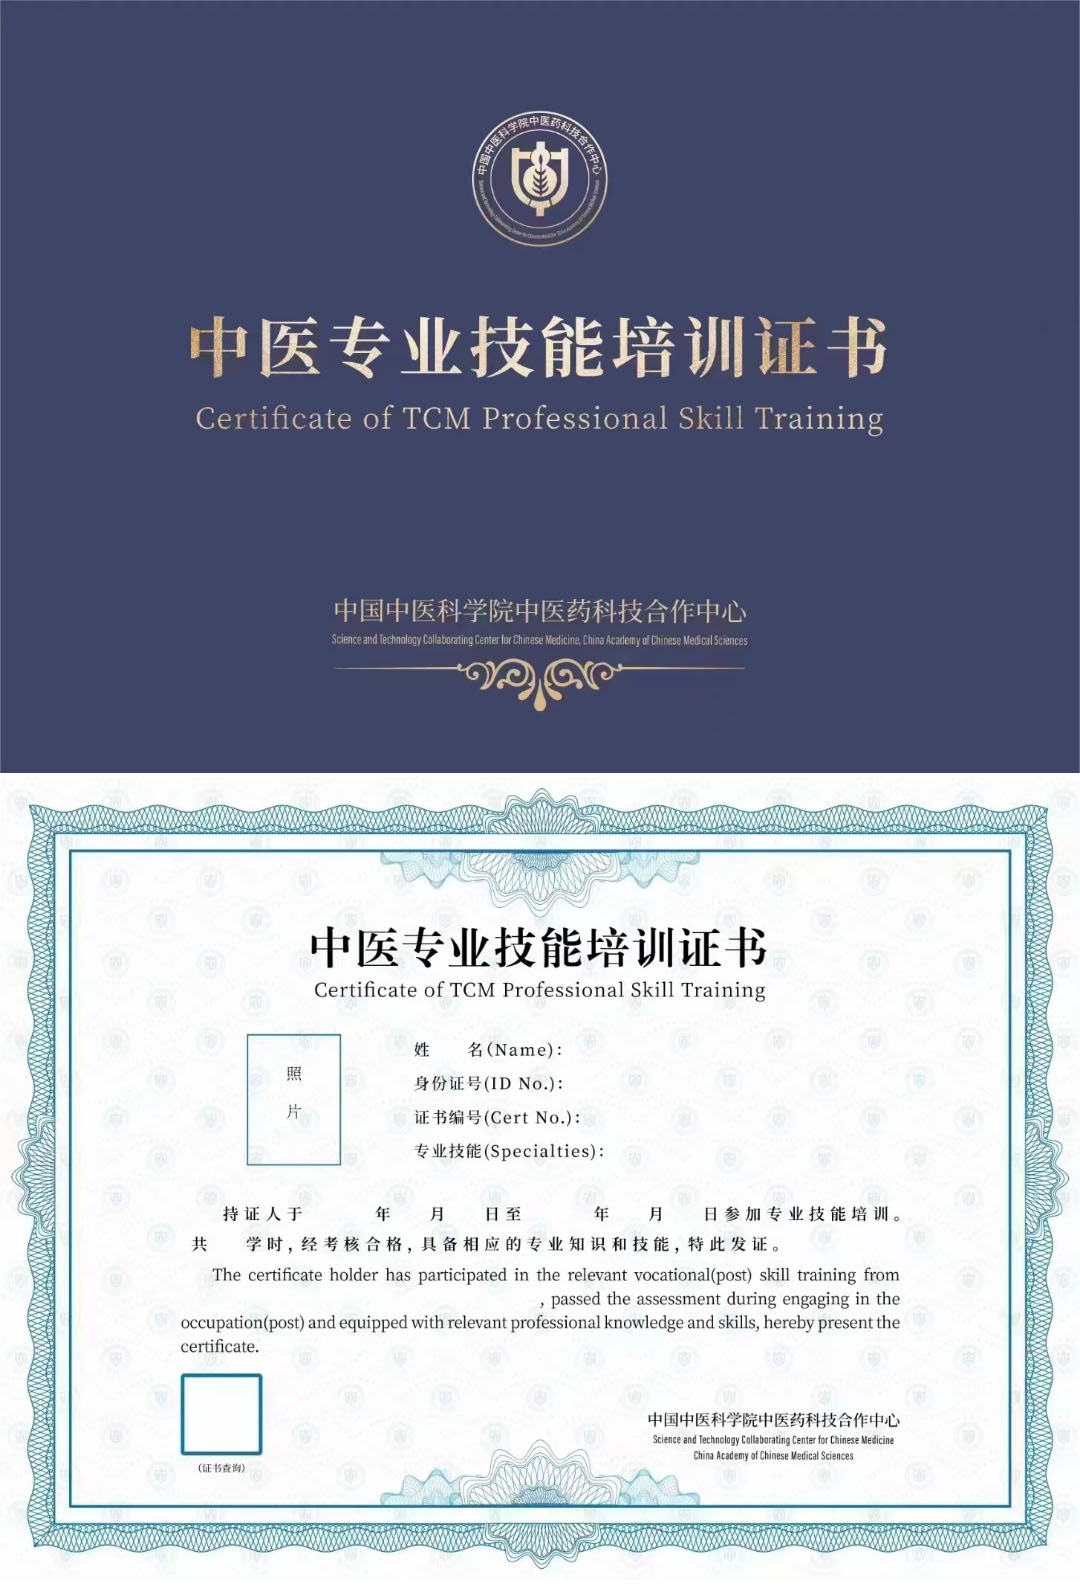 中国中医科学院中医药科技合作中心 中医专业技术培训证书 中医营养师证证书样本